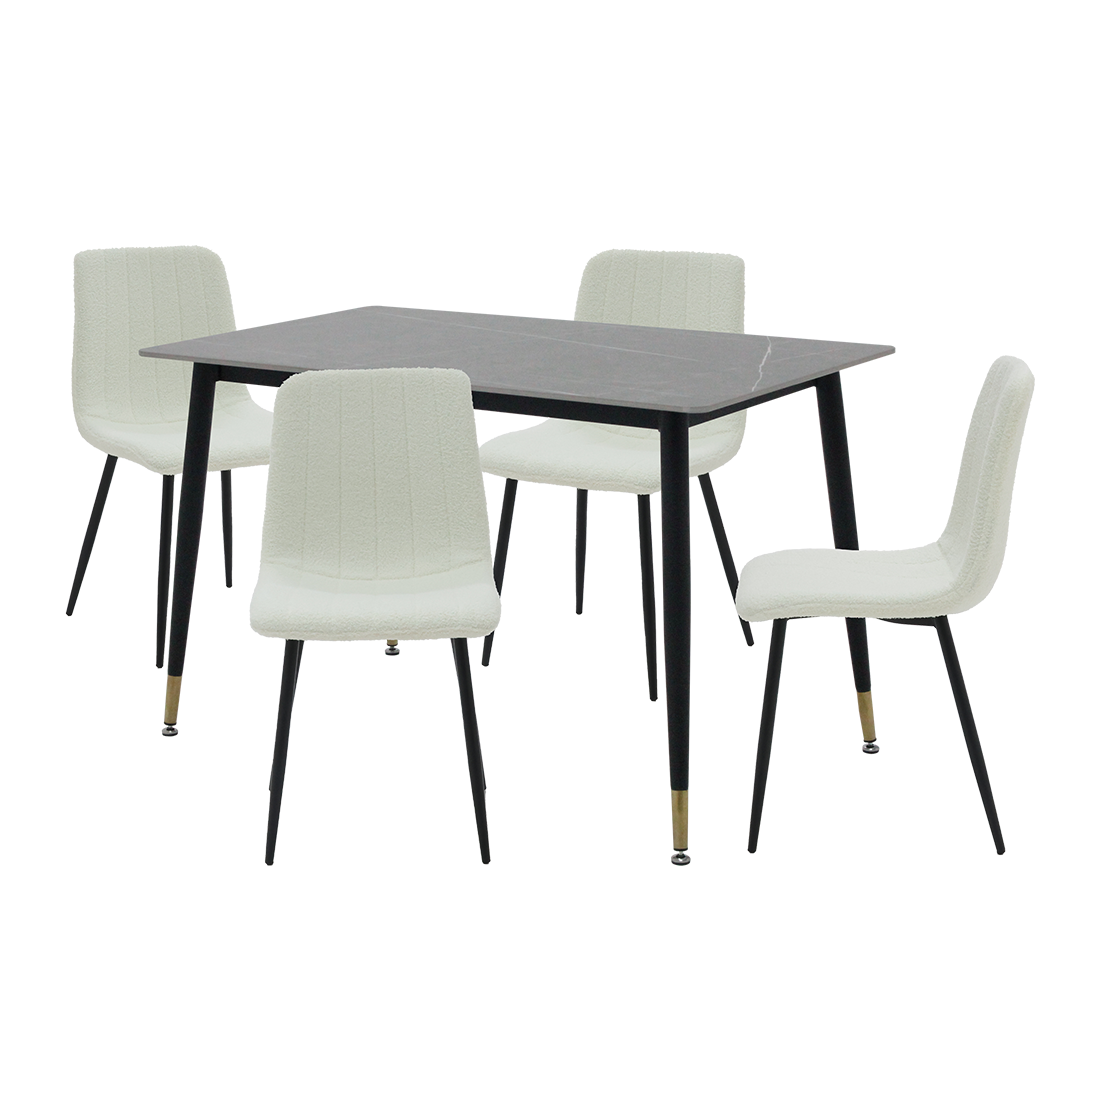 ชุดโต๊ะอาหารรุ่น Charisma สีเทา & เก้าอี้ Layko สีขาว x401